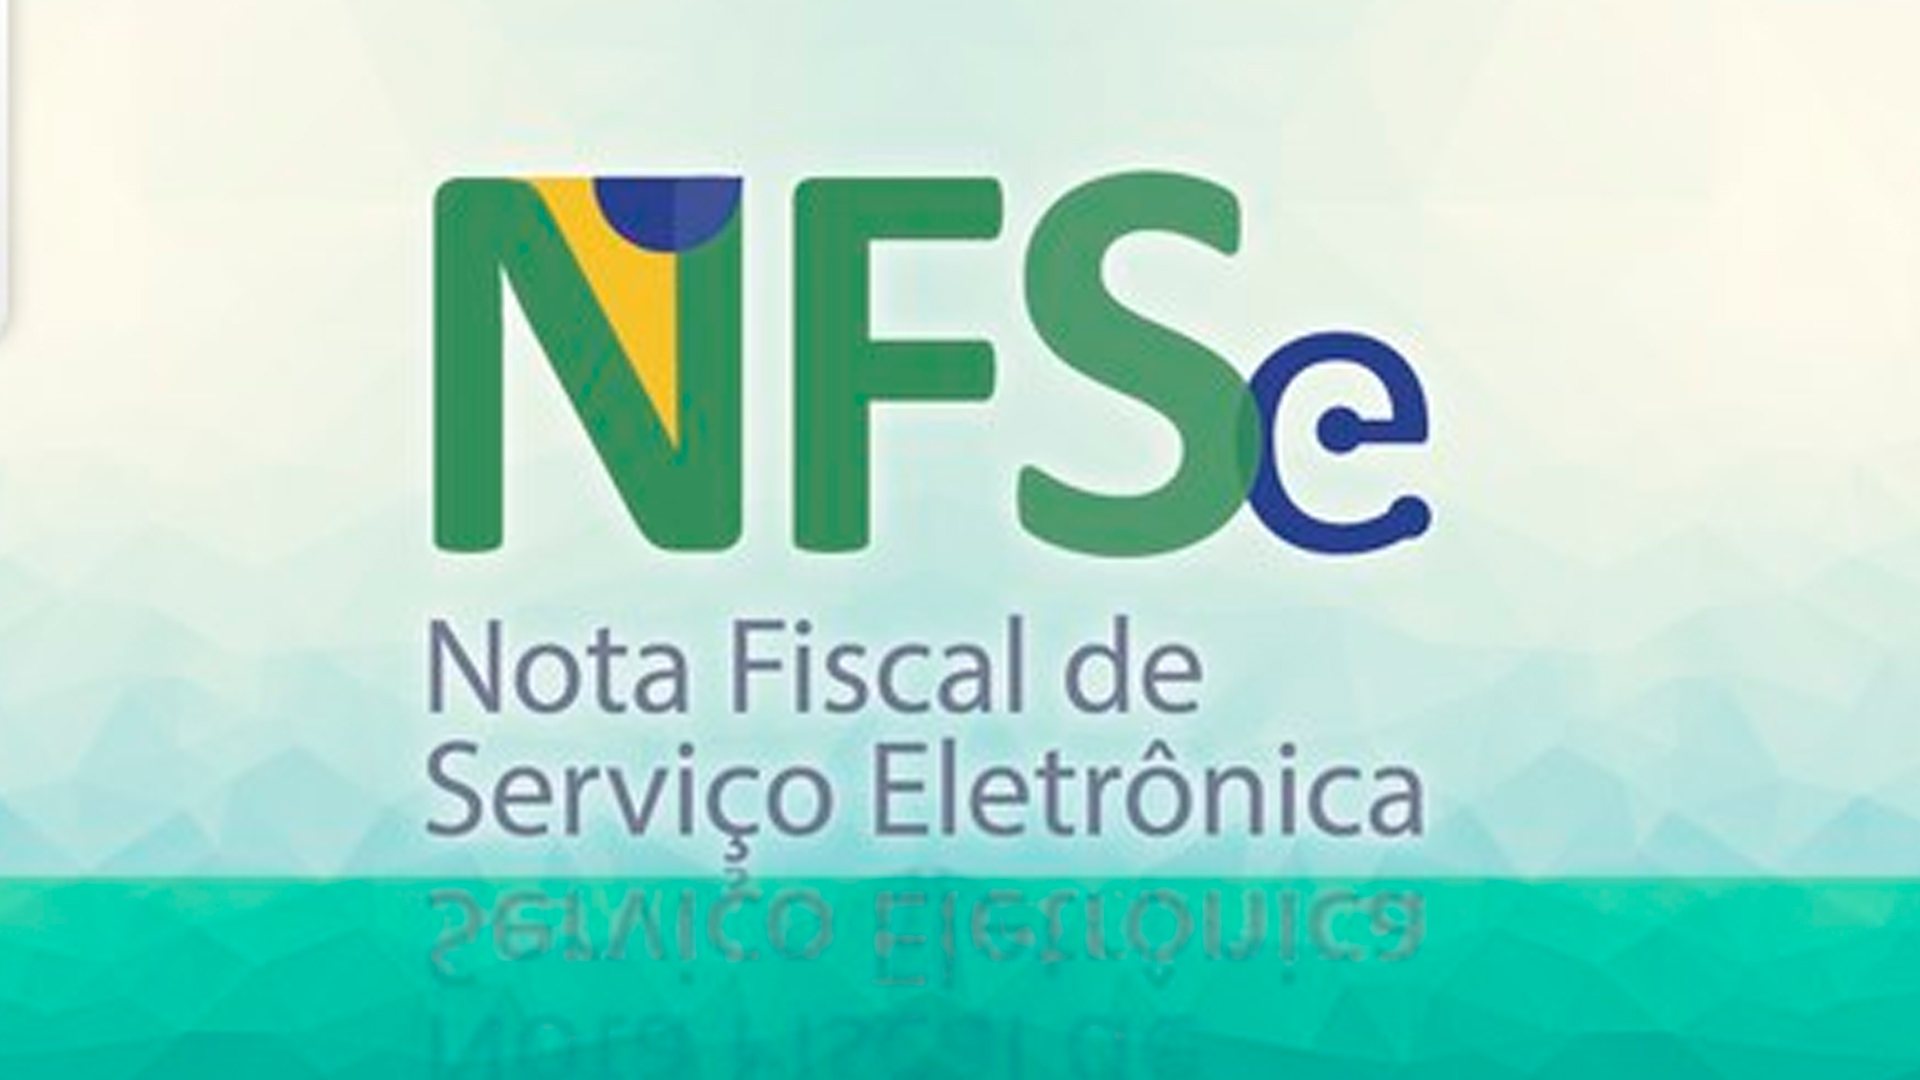 NFS-e Nacional: Mudanças previstas para 2023 para o MEI.